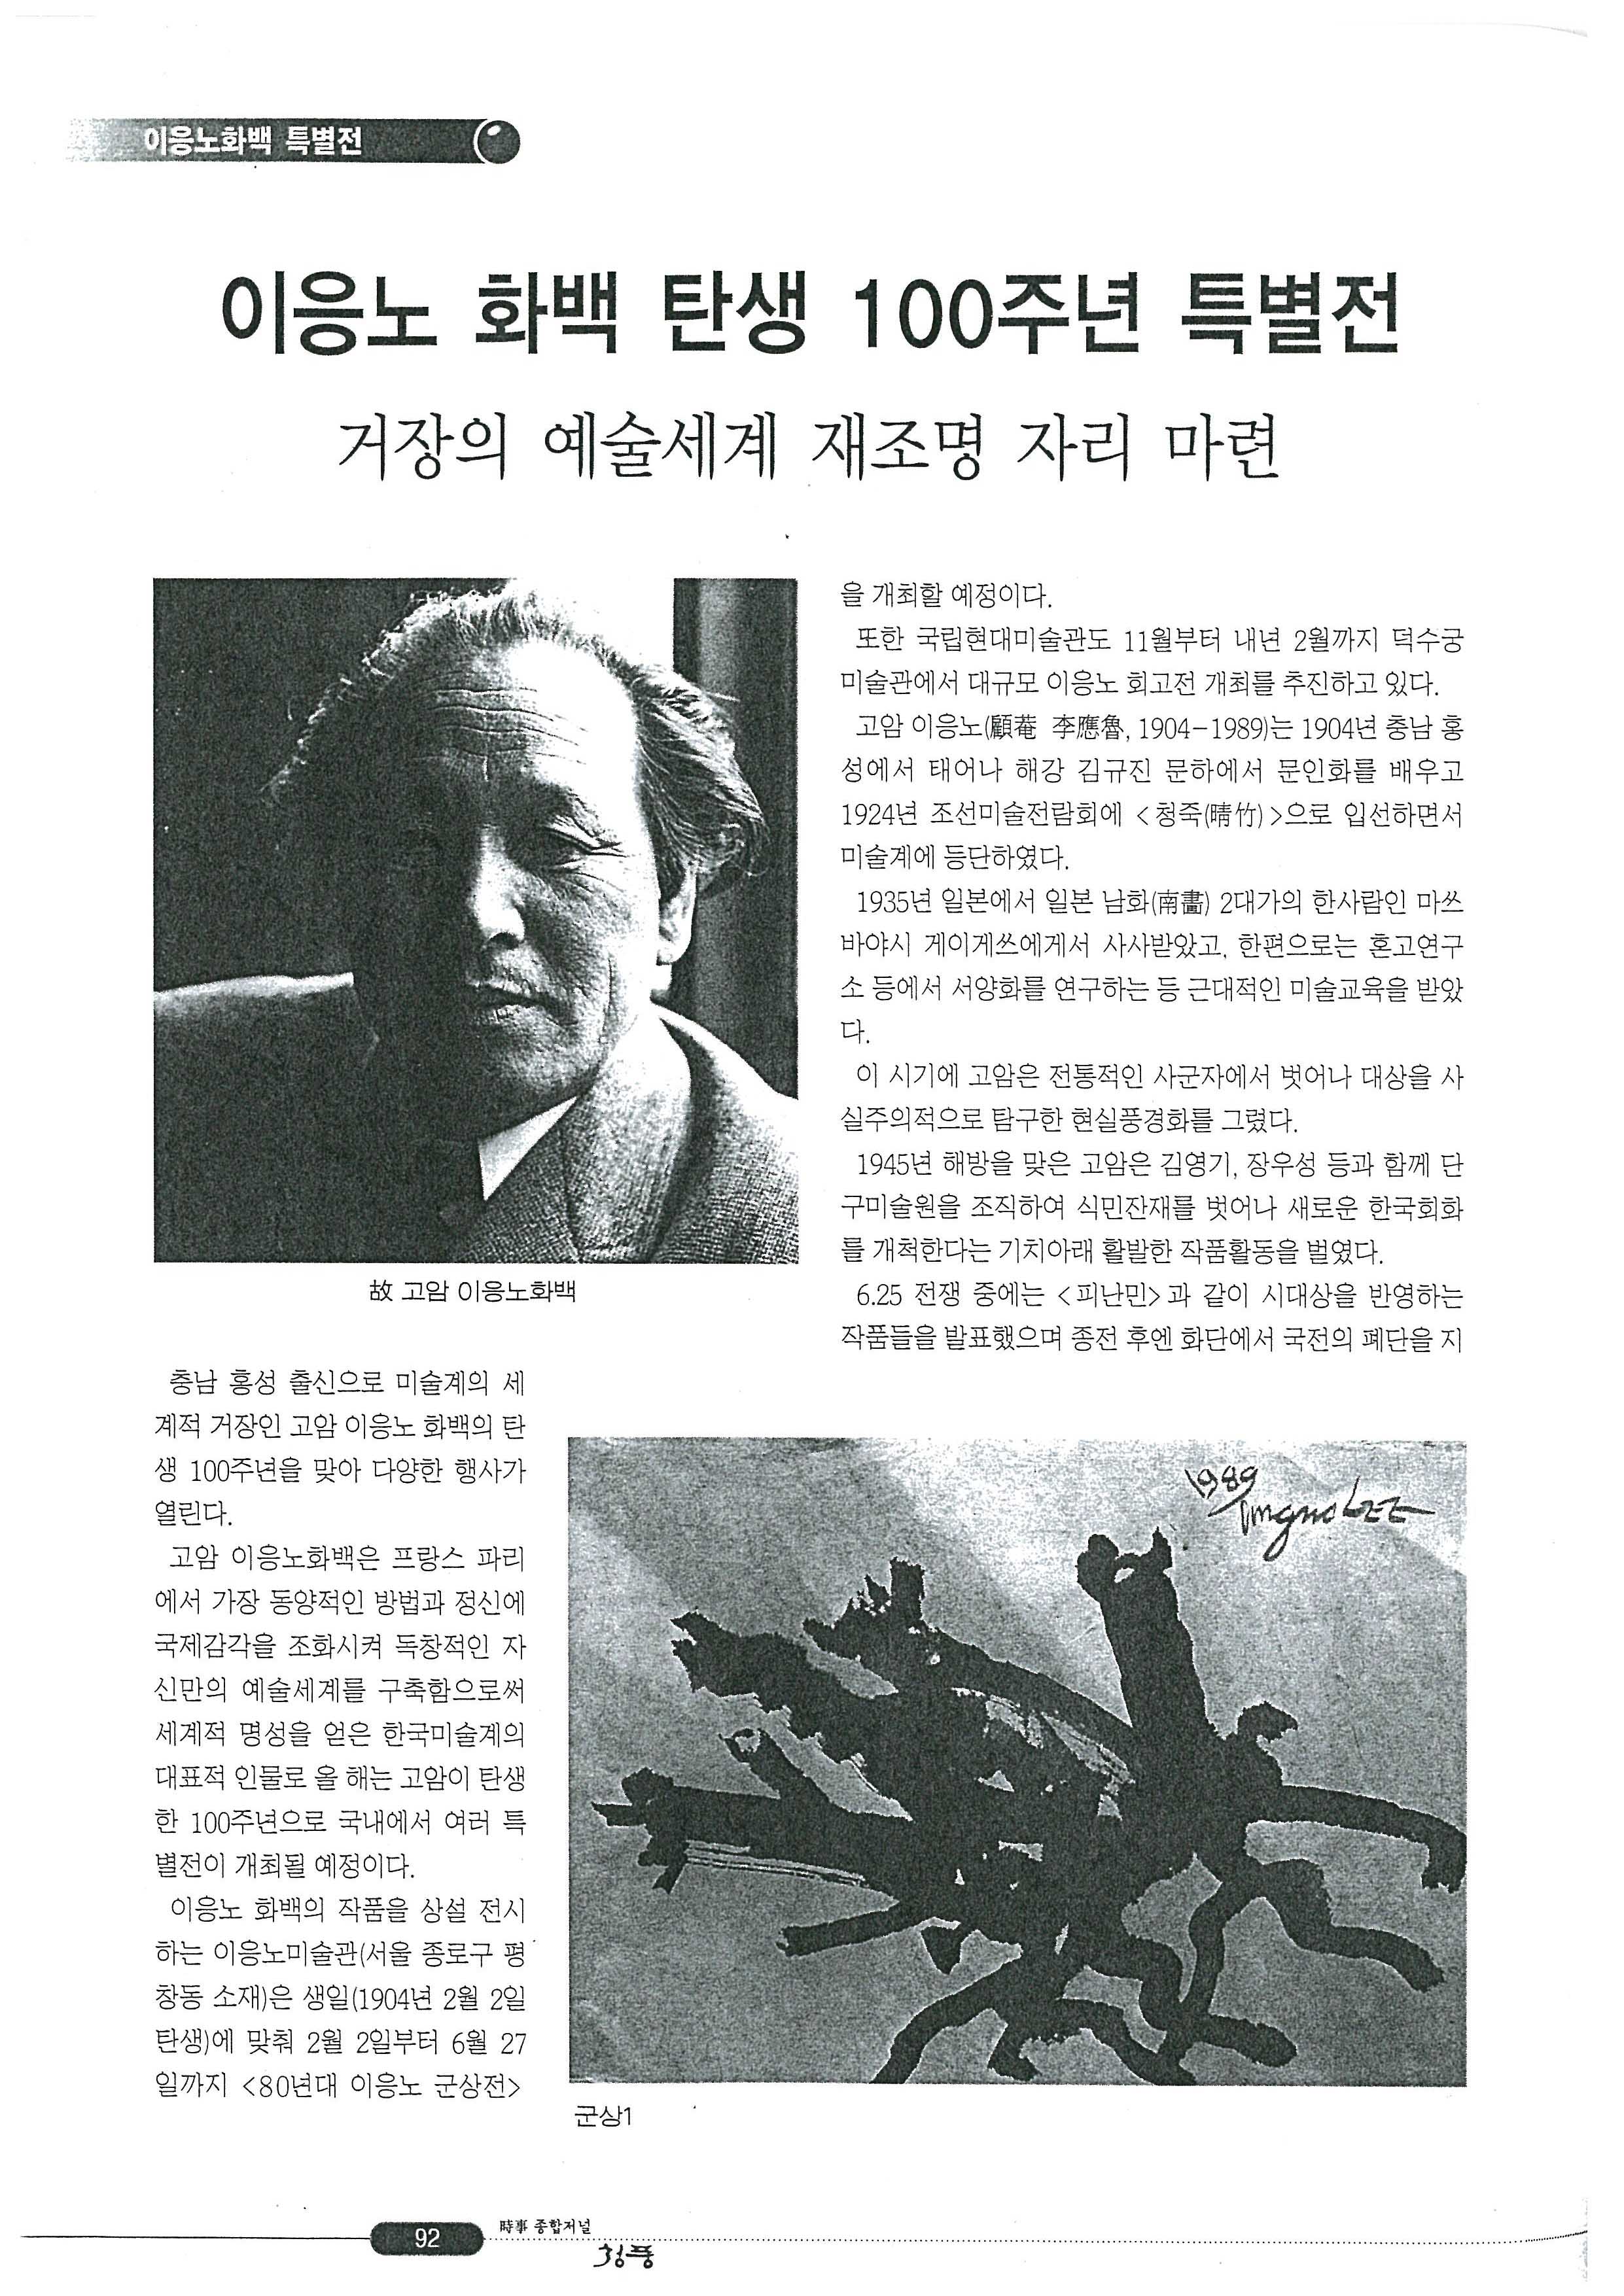 「이응노 화백 탄생 100주년 특별전」, 『청풍』